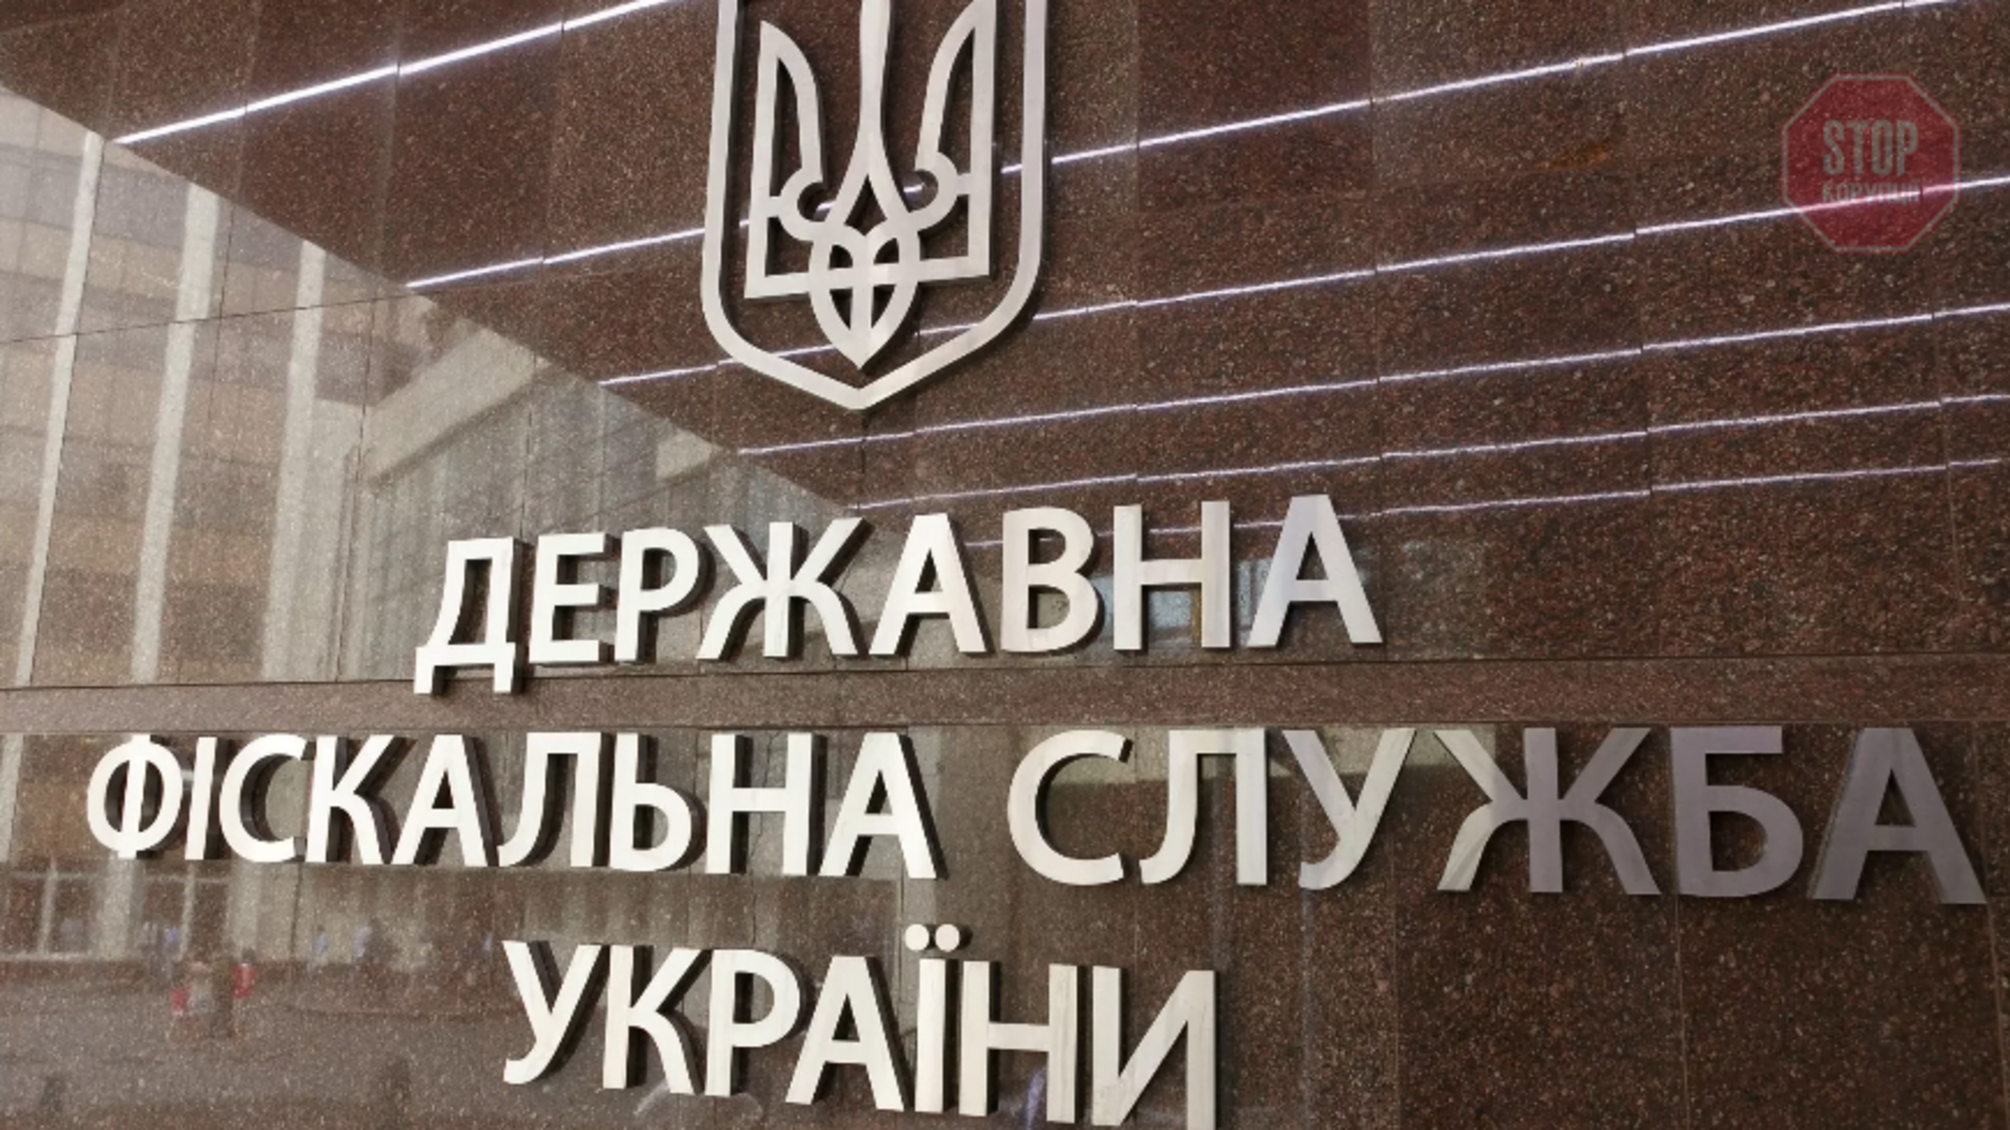 Возможно хищение нескольких миллионов: фискалы провели обыски в КП 'Киевводфонд'